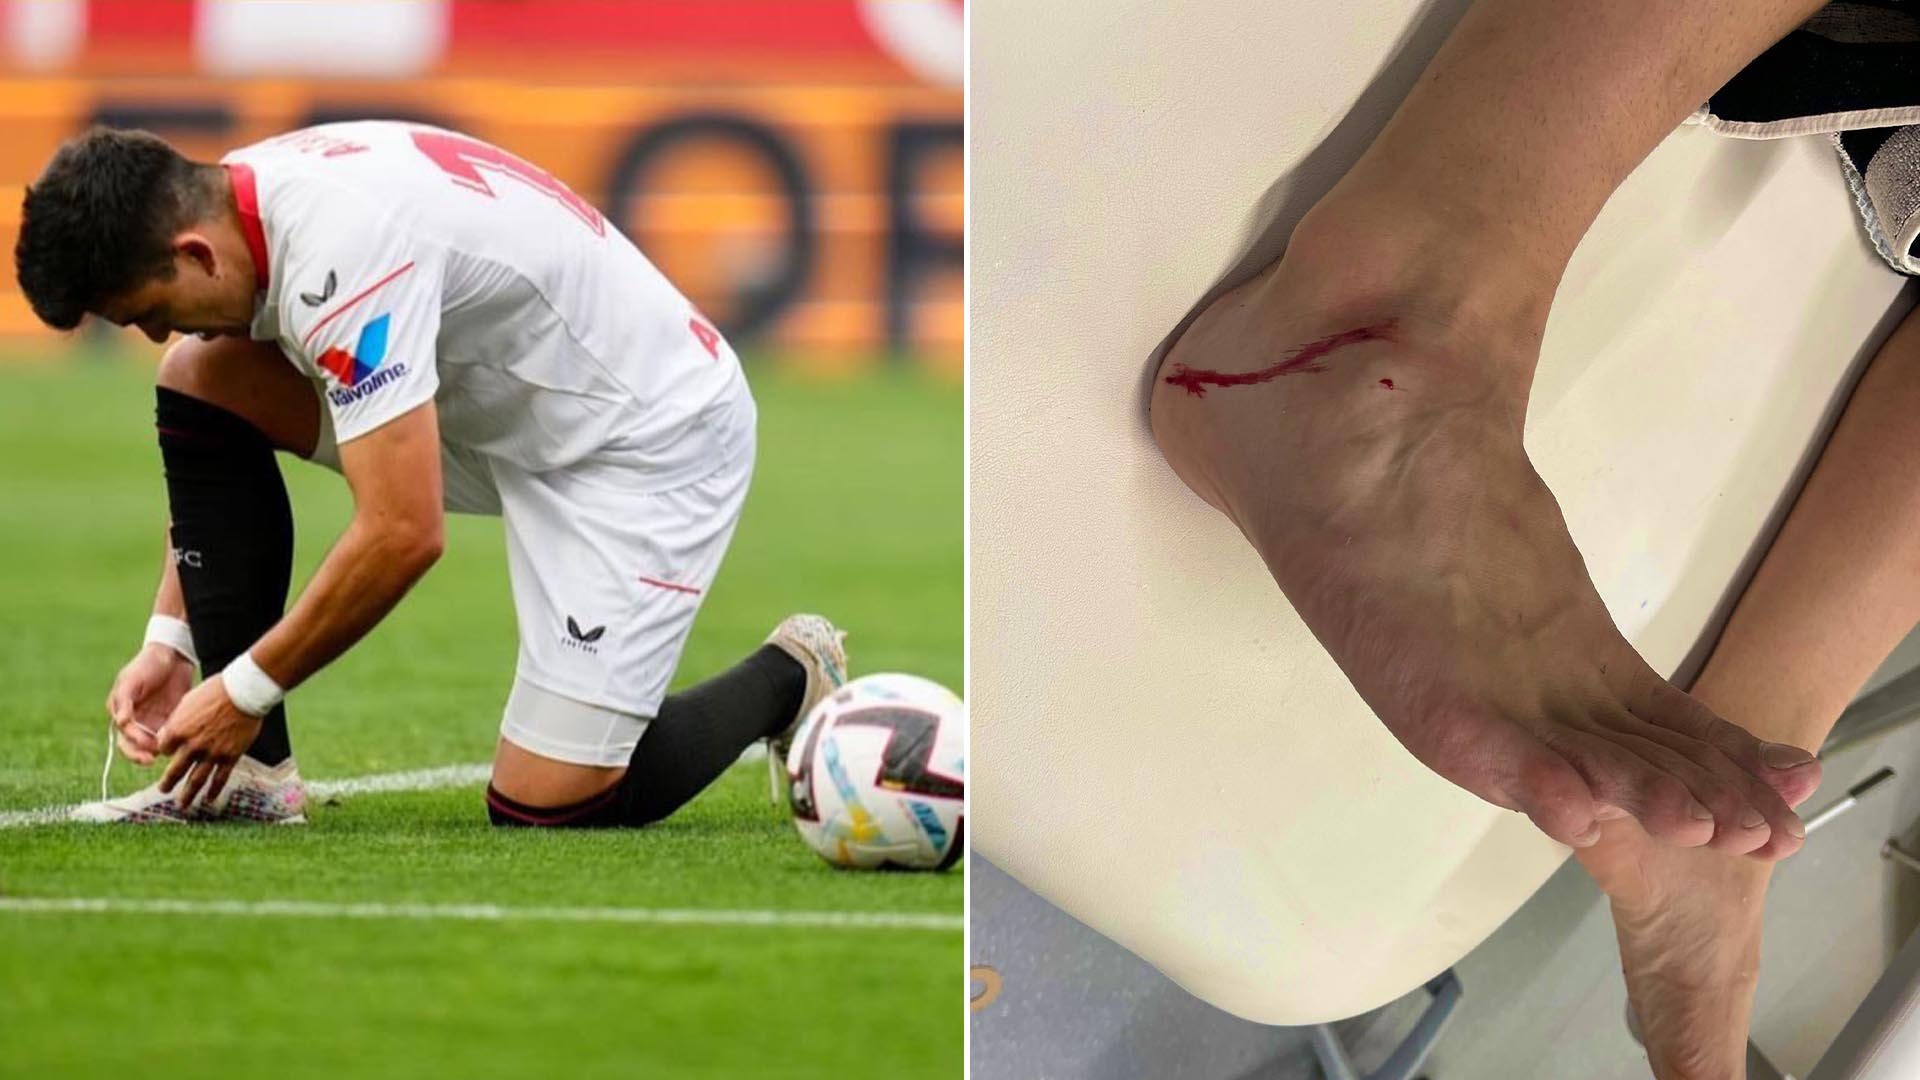 La brutal patada que desencadenó un tenso cruce entre Huevo Acuña y un jugador del Real Madrid